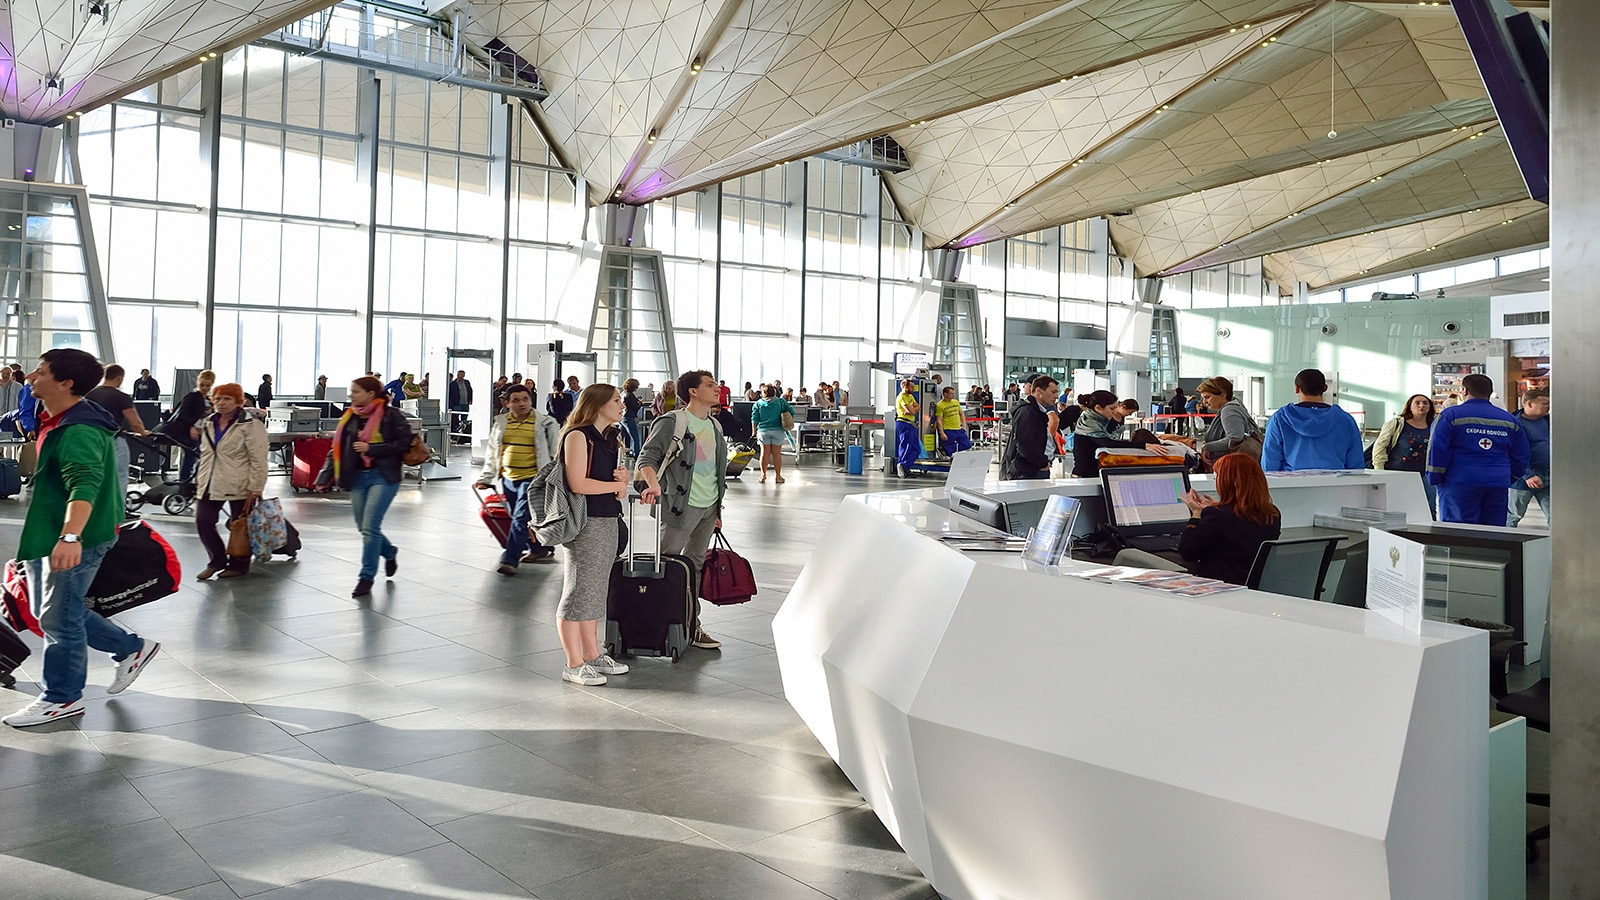 Krion™ si consolida nel settore aeroportuale grazie alle elevati prestazioni di sicurezza ed igiene